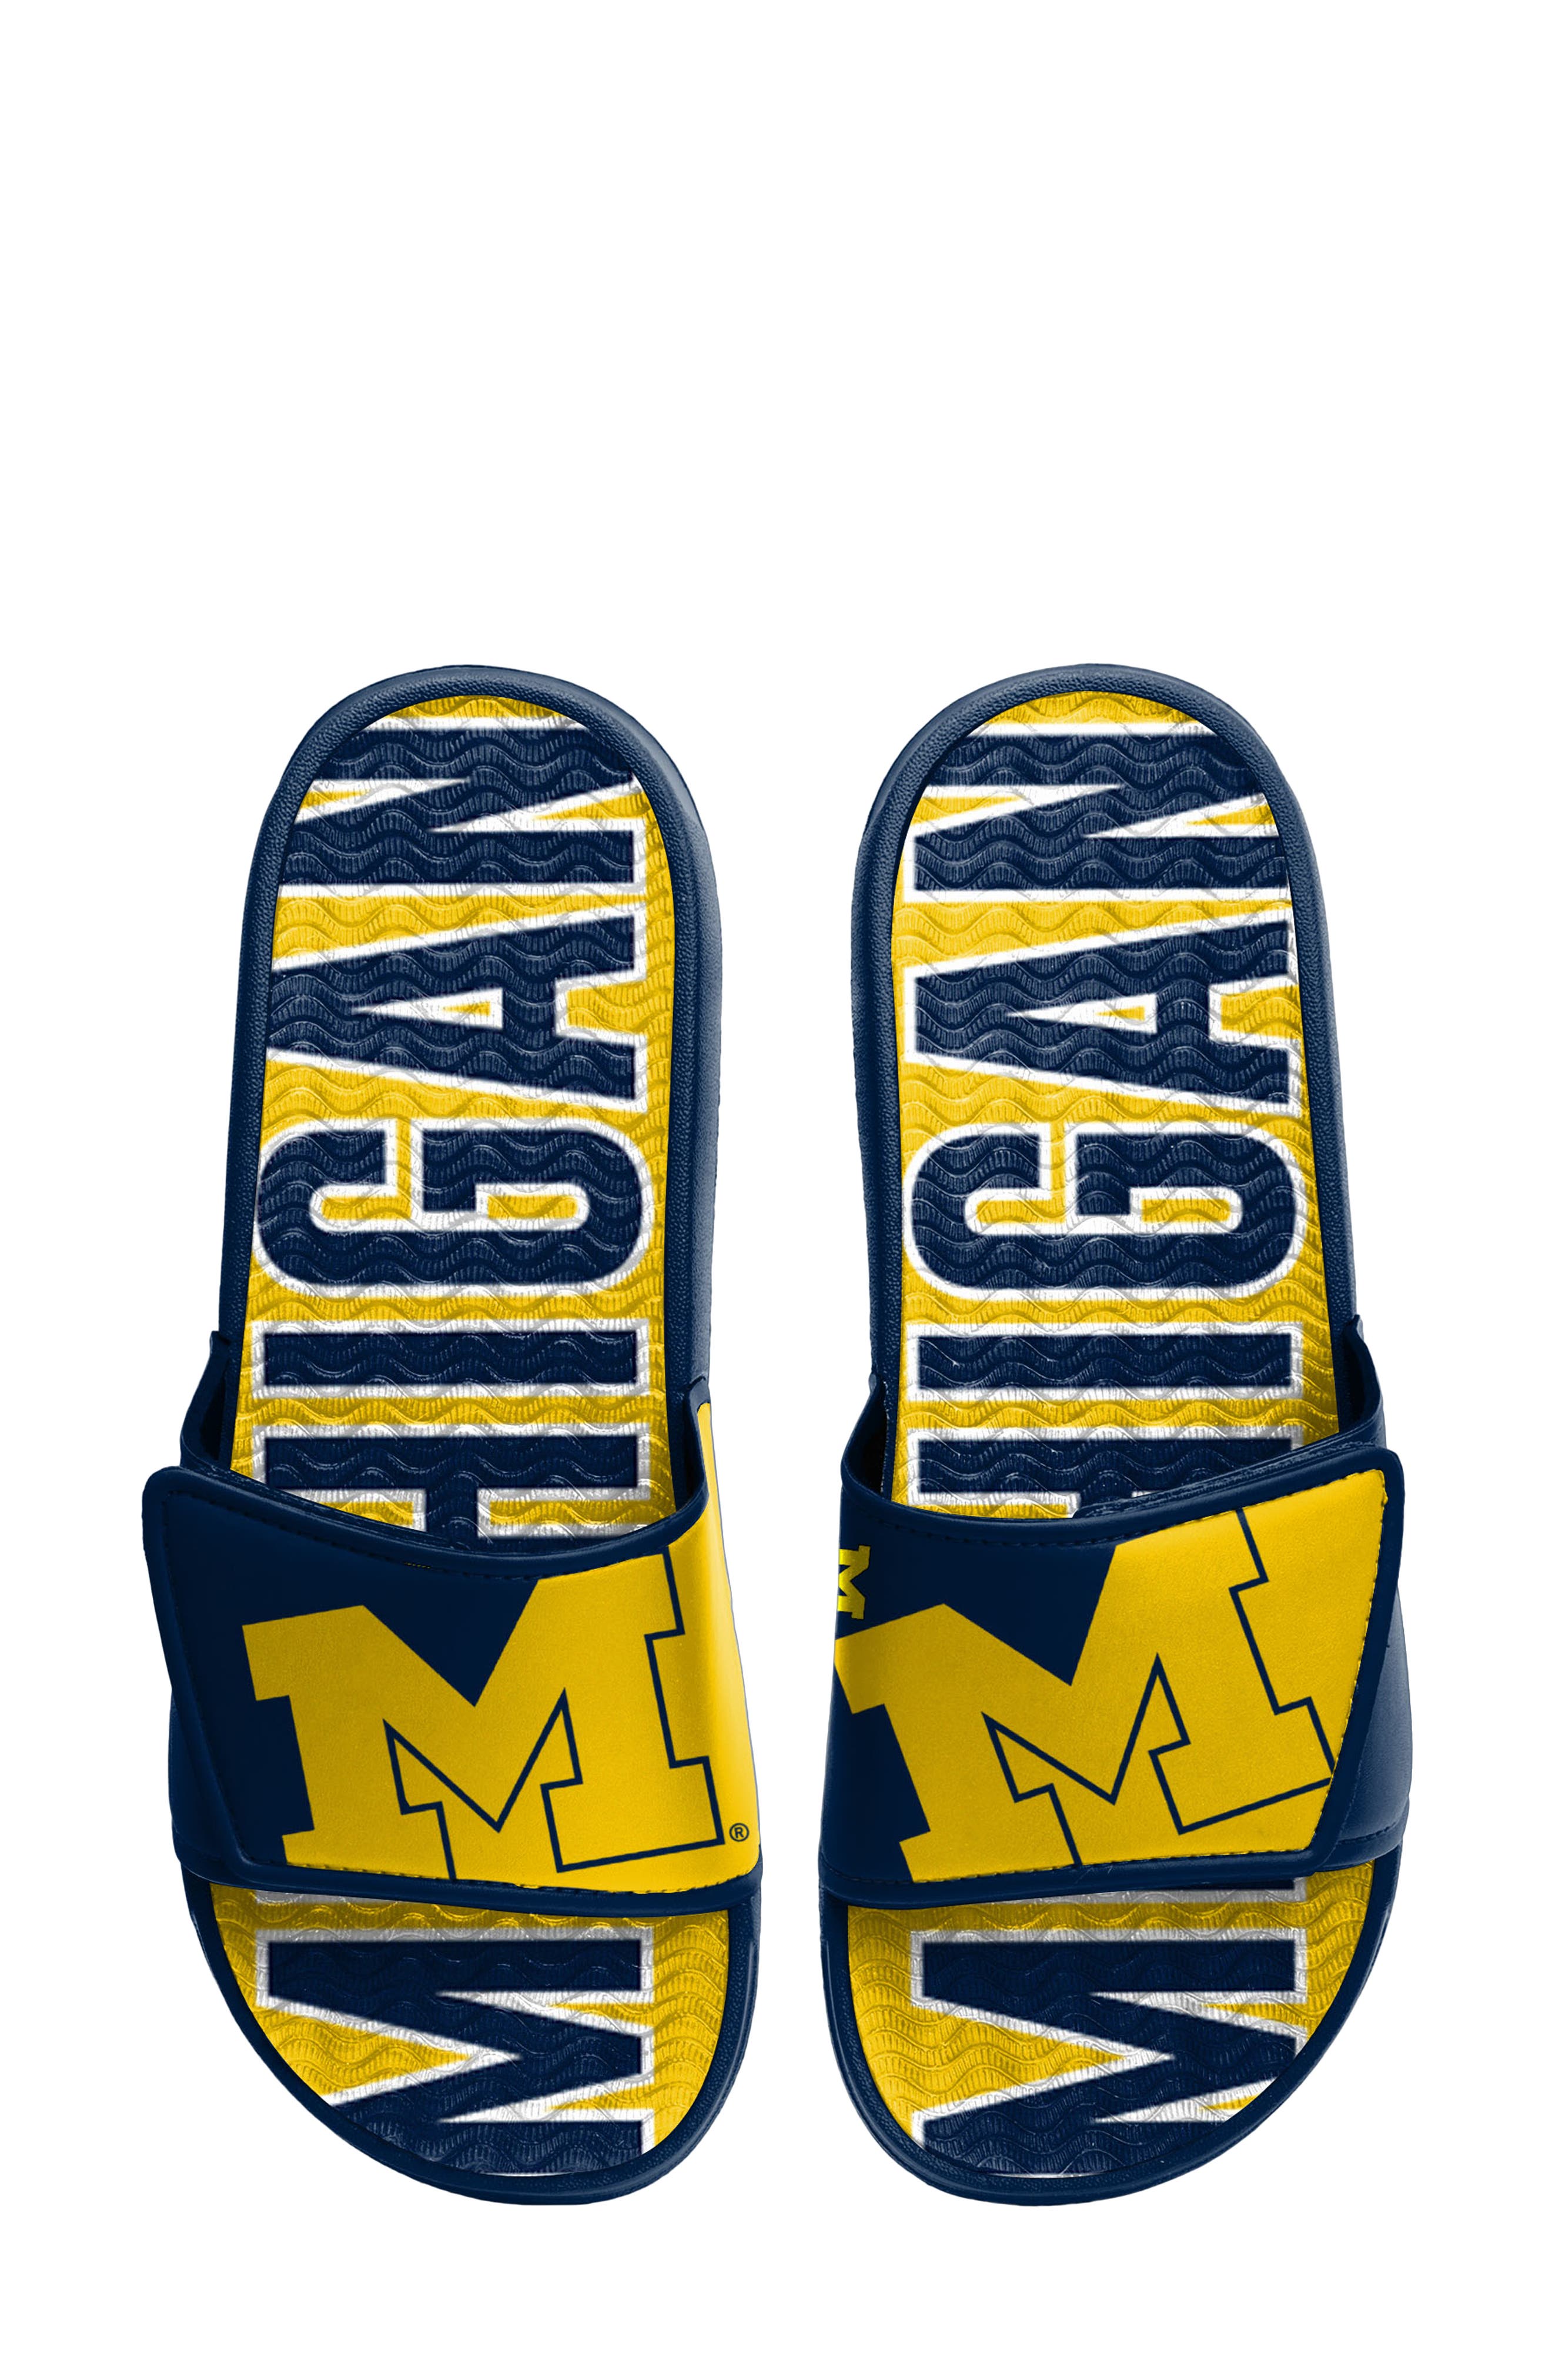 Michigan Wolverines Mens Big Blue Shower Slides Sandal Shoes 